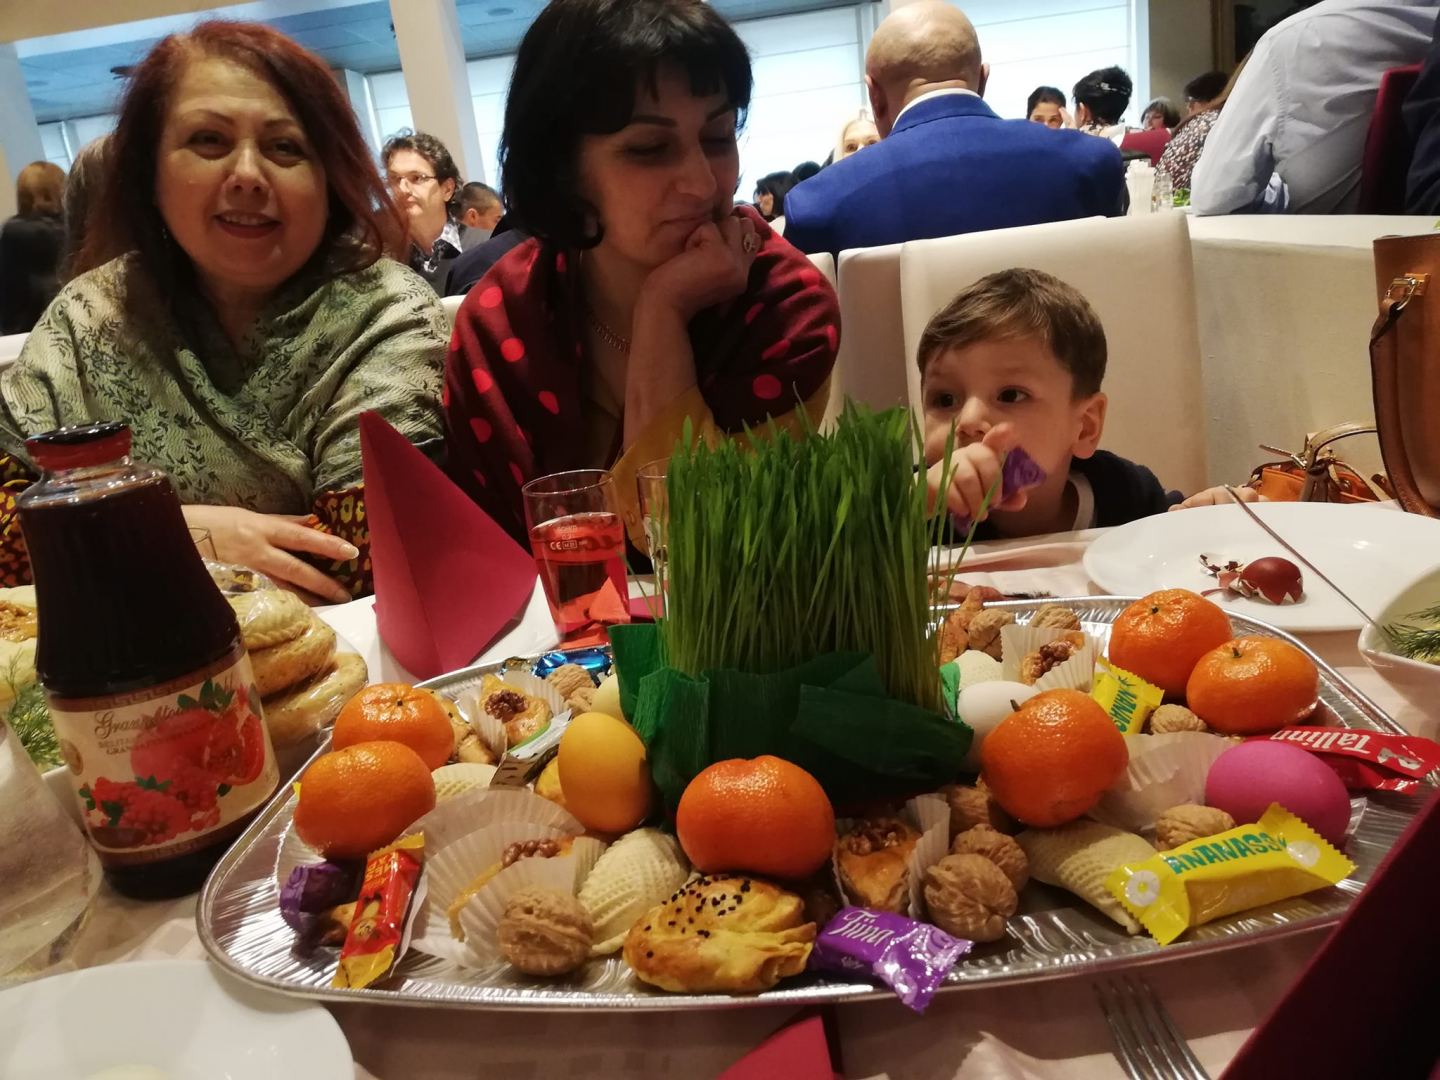 В Таллине наступила азербайджанская праздничная весна (ВИДЕО, ФОТО)